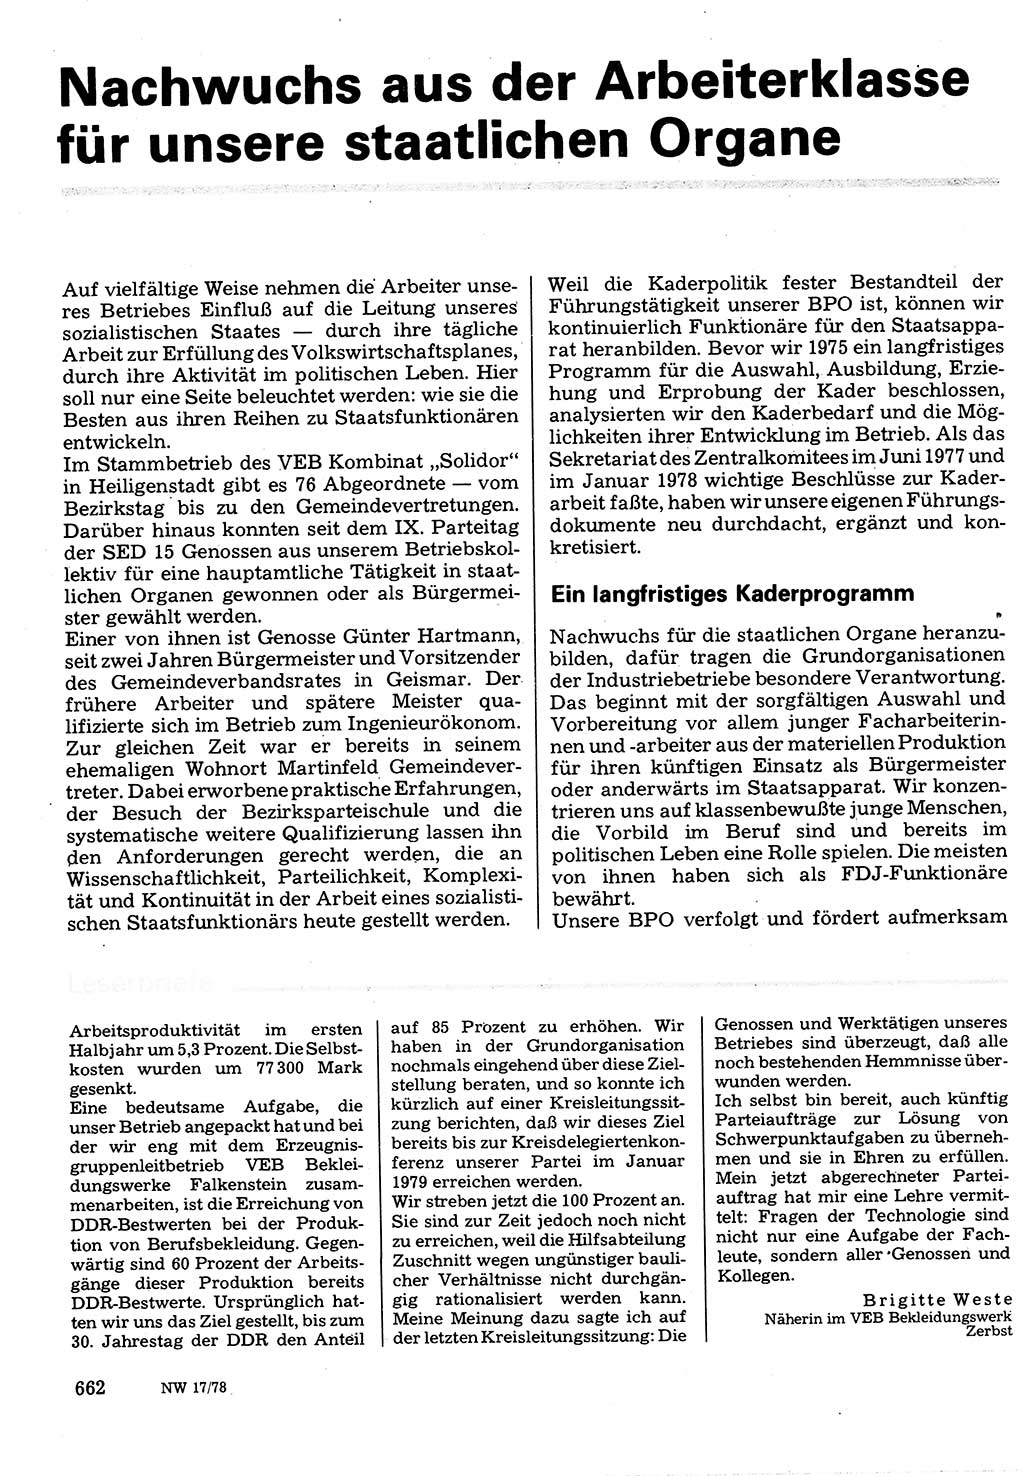 Neuer Weg (NW), Organ des Zentralkomitees (ZK) der SED (Sozialistische Einheitspartei Deutschlands) für Fragen des Parteilebens, 33. Jahrgang [Deutsche Demokratische Republik (DDR)] 1978, Seite 662 (NW ZK SED DDR 1978, S. 662)